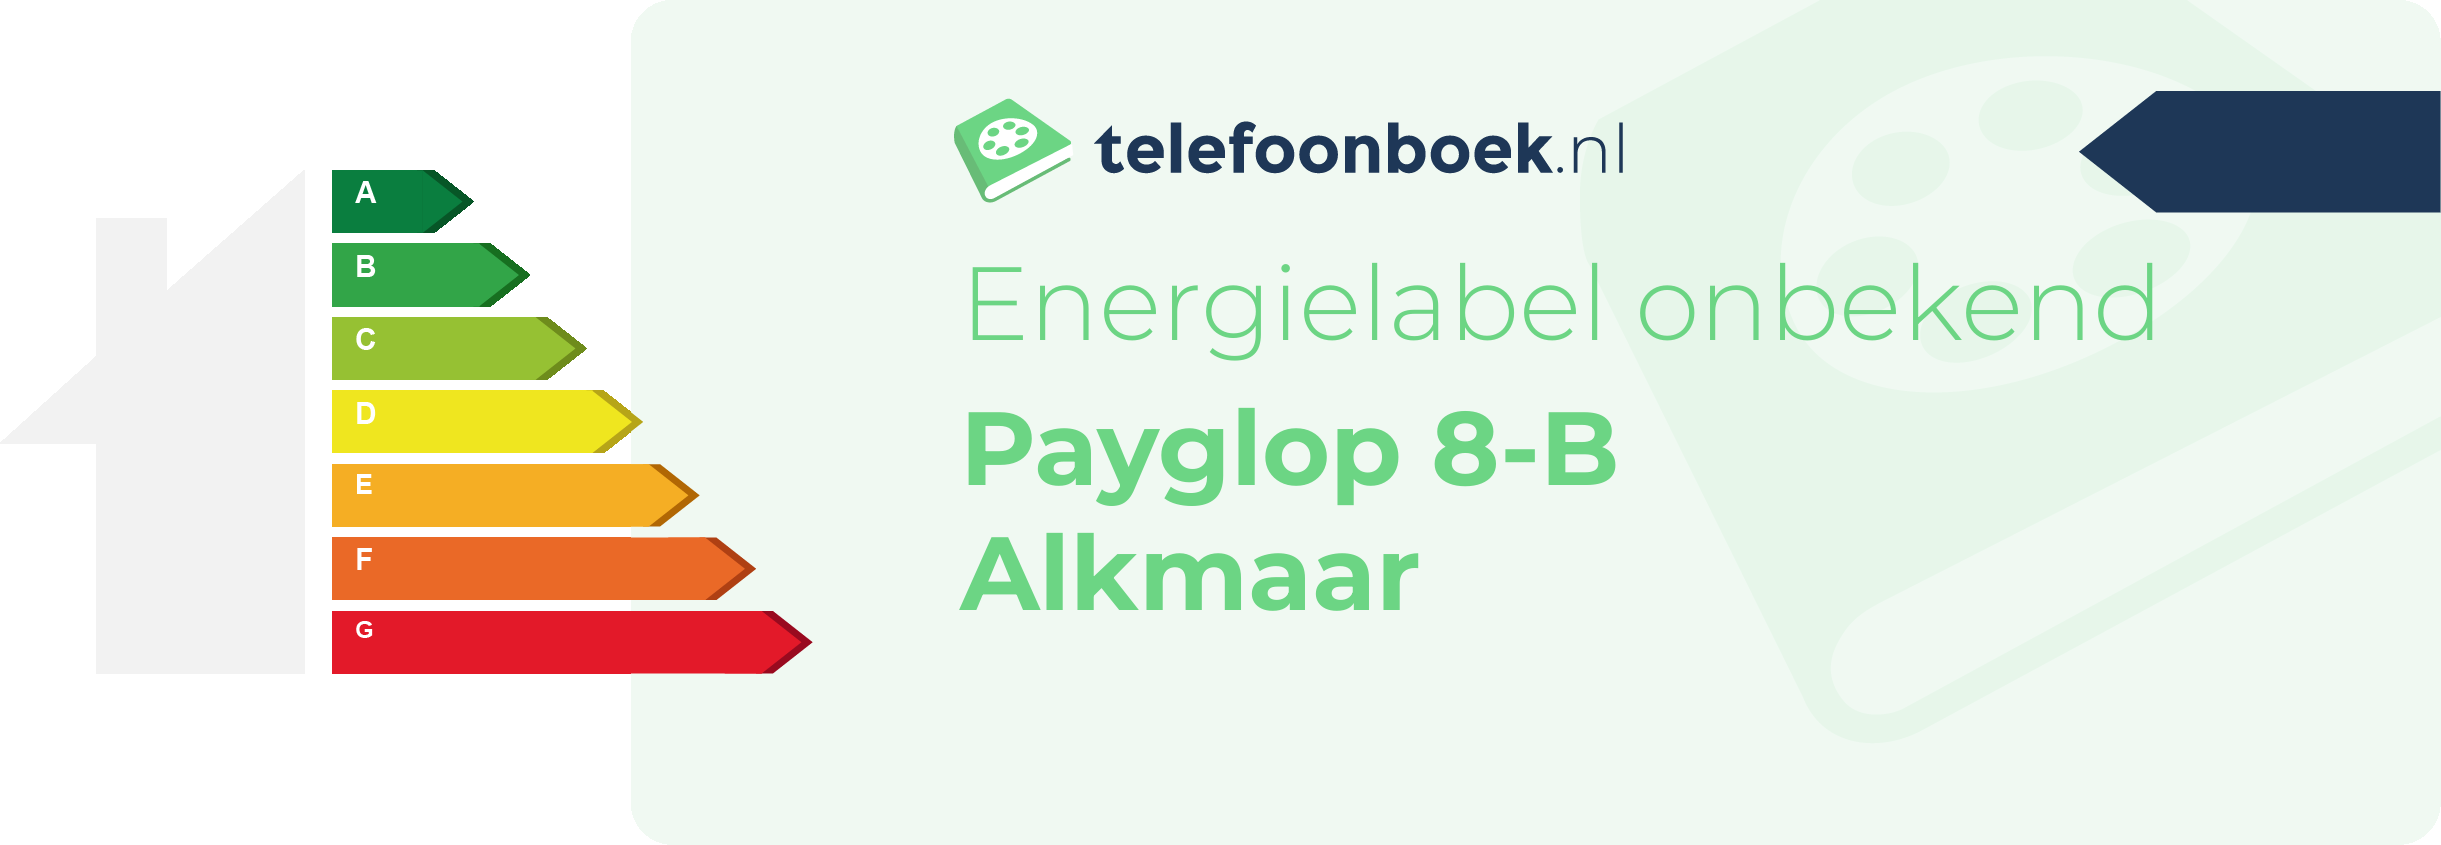 Energielabel Payglop 8-B Alkmaar